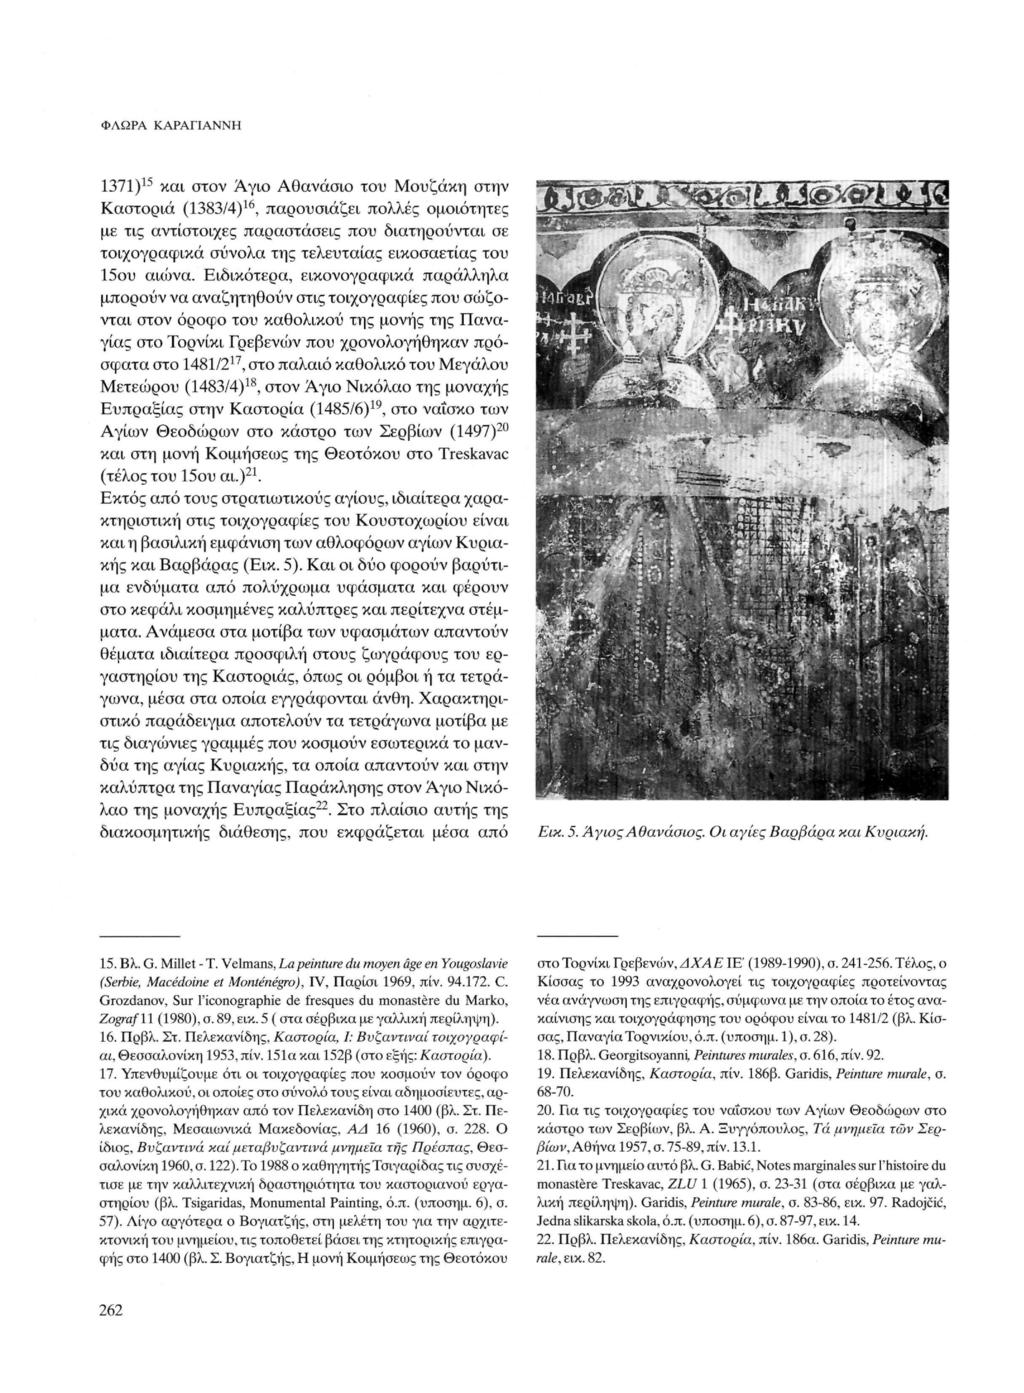 ΦΛΩΡΑ ΚΑΡΑΠΑΝΝΗ 15 1371) και στον Άγιο Αθανάσιο του Μουζάκη στην 16 Καστοριά (1383/4), παρουσιάζει πολλές ομοιότητες με τις αντίστοιχες παραστάσεις που διατηρούνται σε τοιχογραφικά σύνολα της